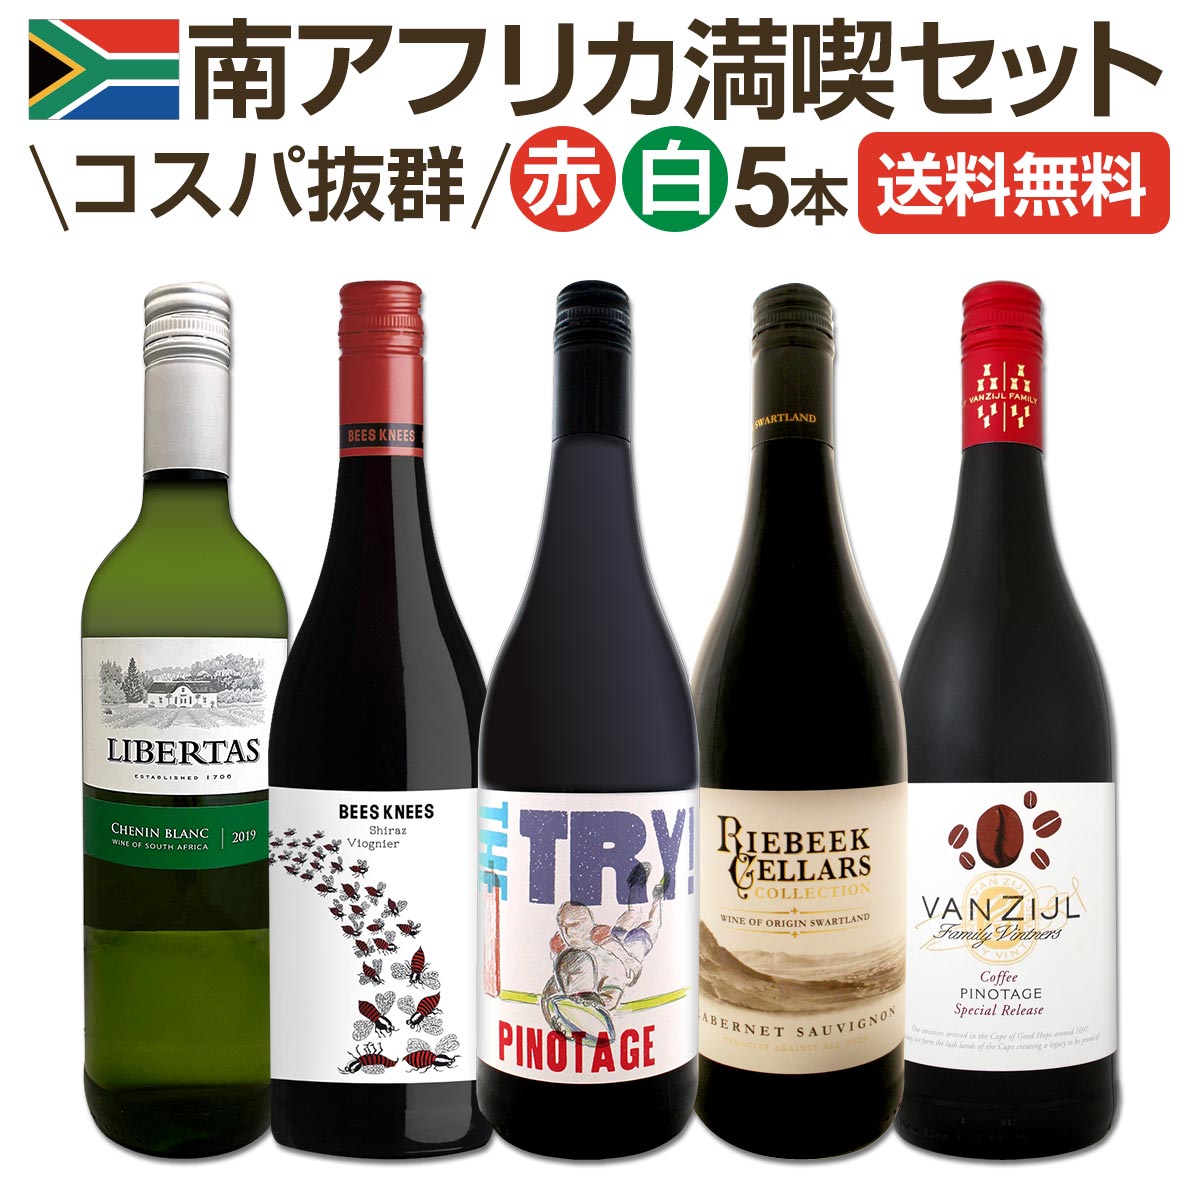 市場 送料無料 世界でもっとも美しいワイン産地と呼ばれる南アらしいワイン5本セット 南アフリカ満喫セット